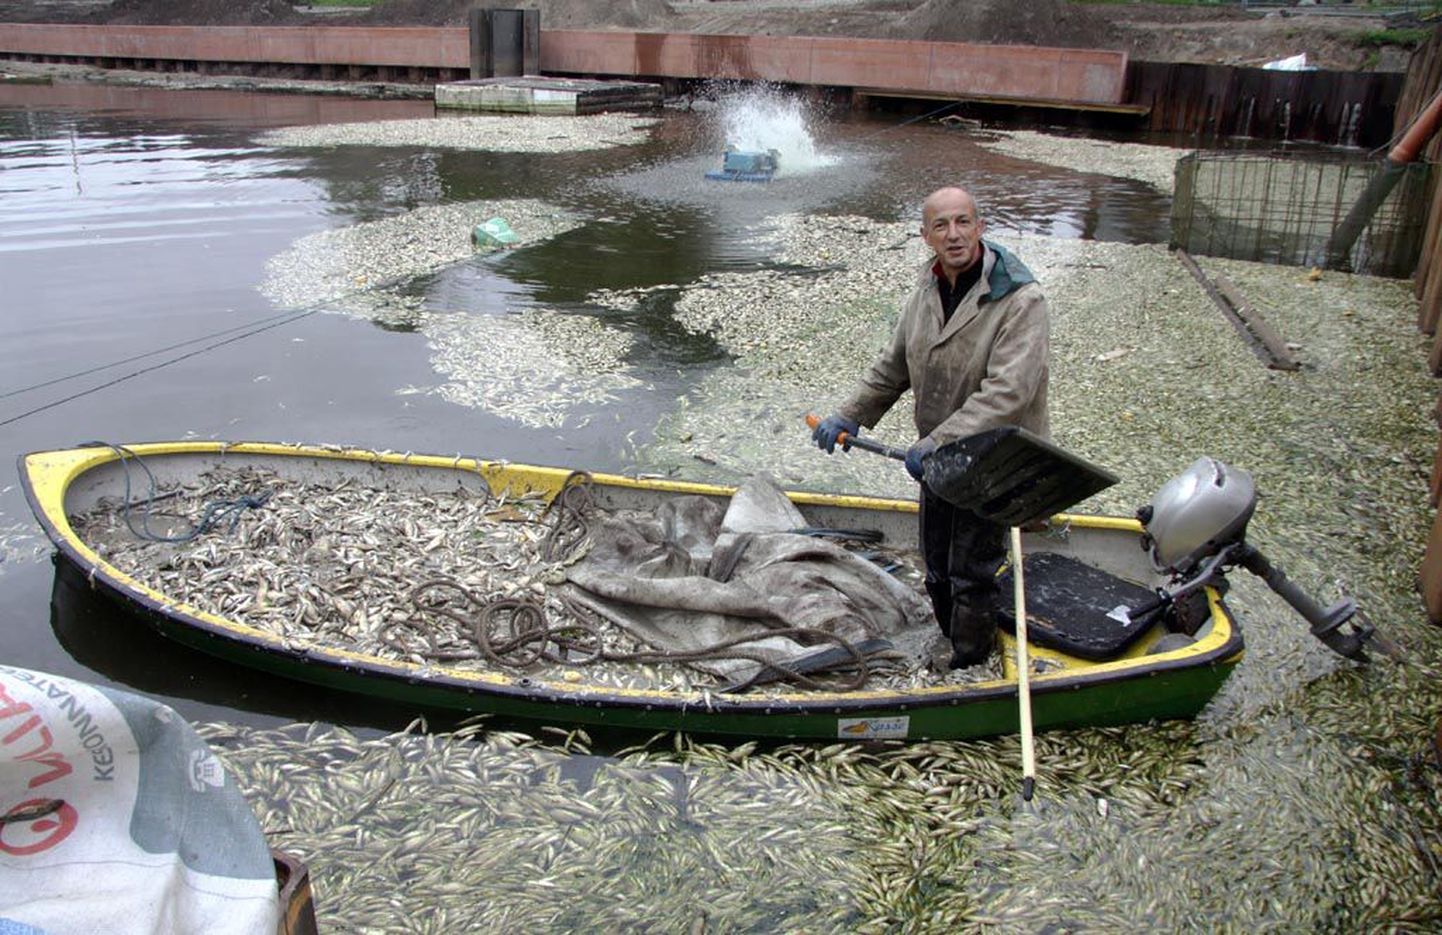 Merko Ehituse töömees Andres Sutt oli eilegi ametis lõpnud kalade koristamisega.